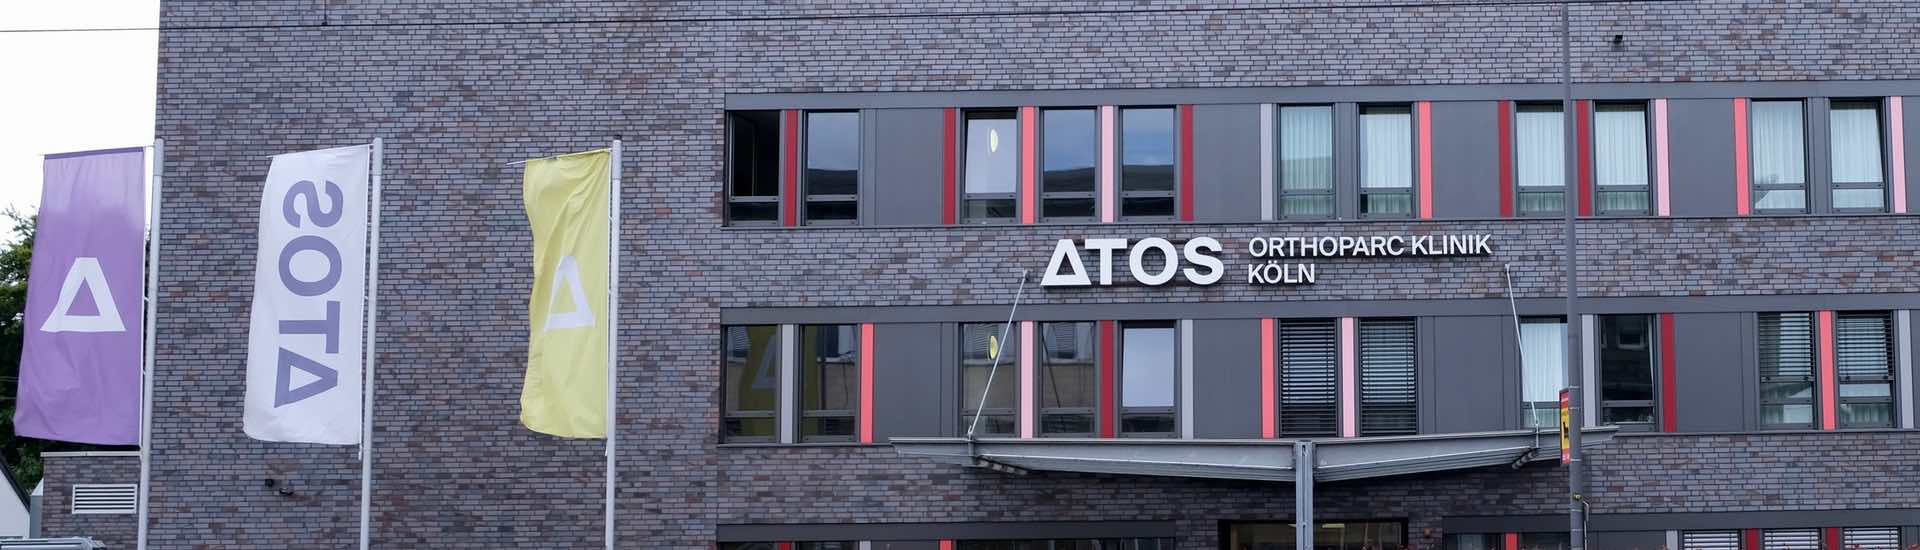 ATOS Orthoparc Köln